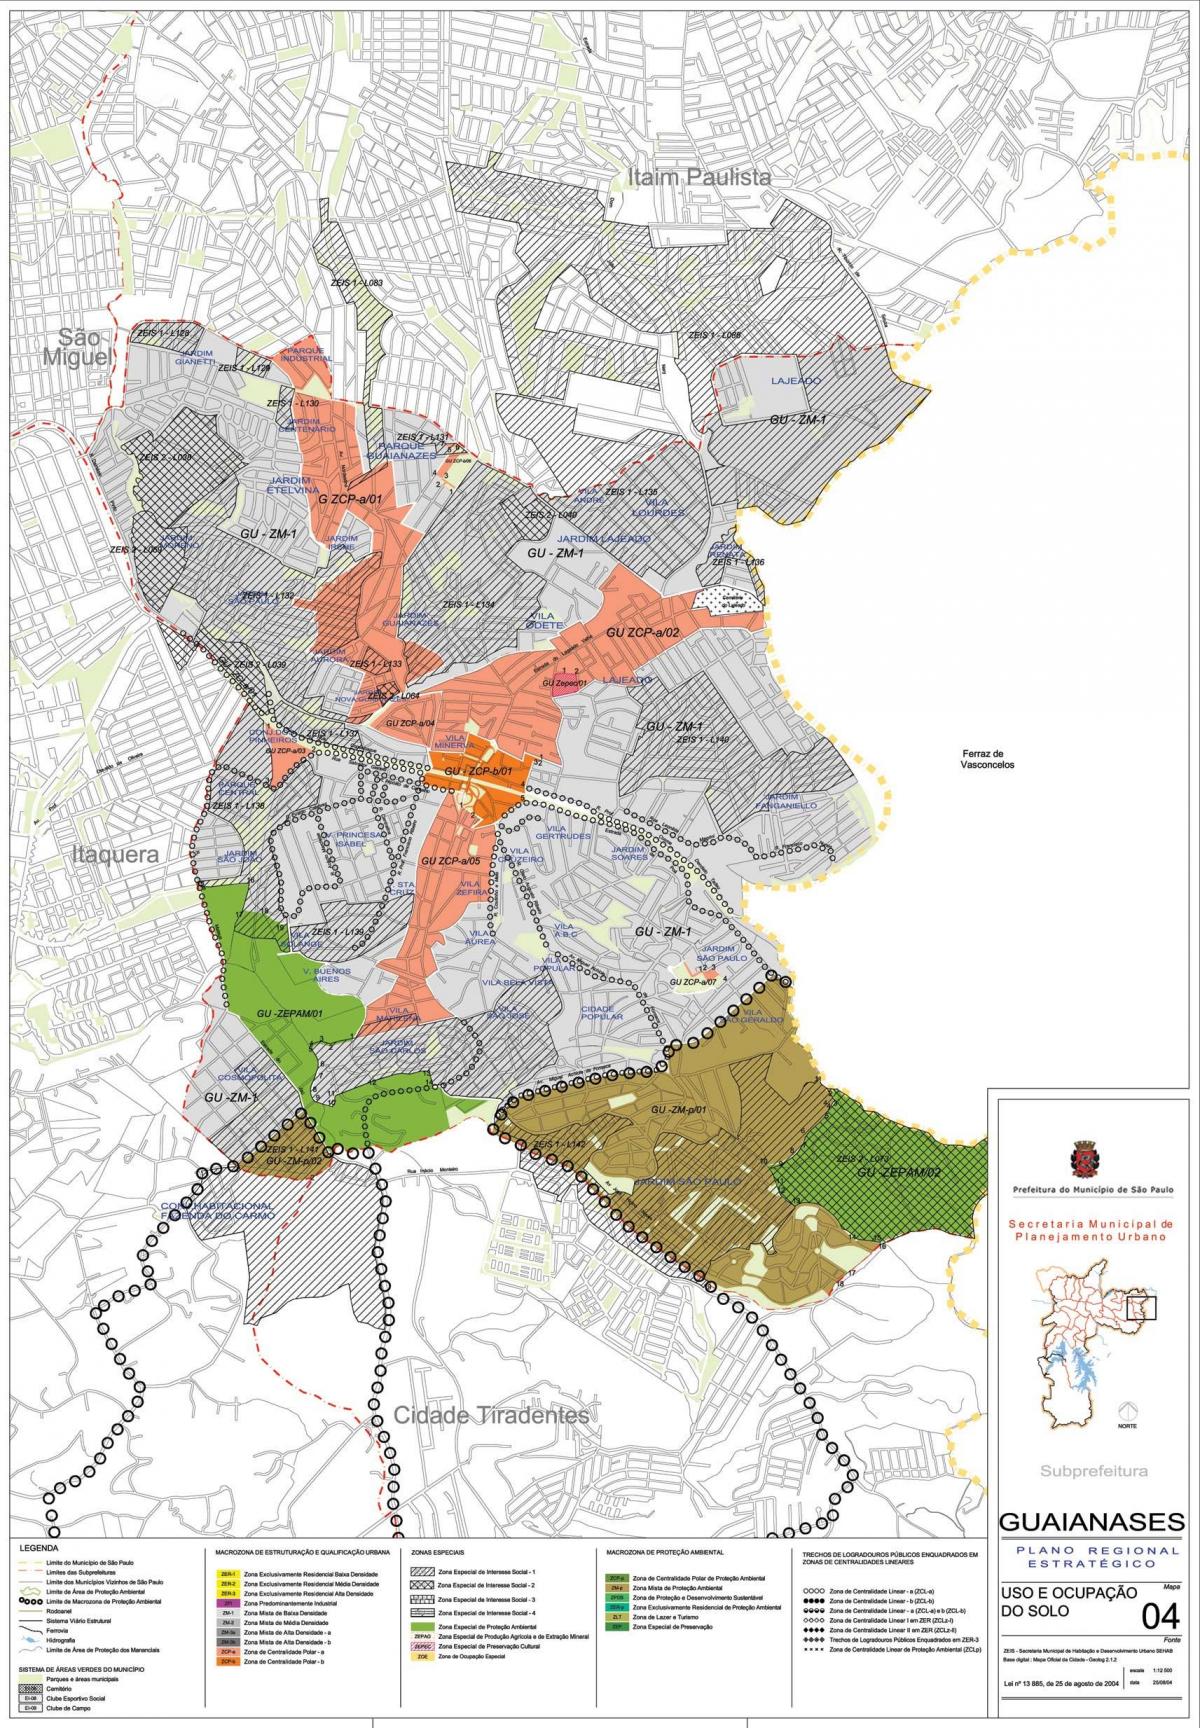 خريطة من ان تأتي ، رغم ذلك ساو باولو - الاحتلال التربة